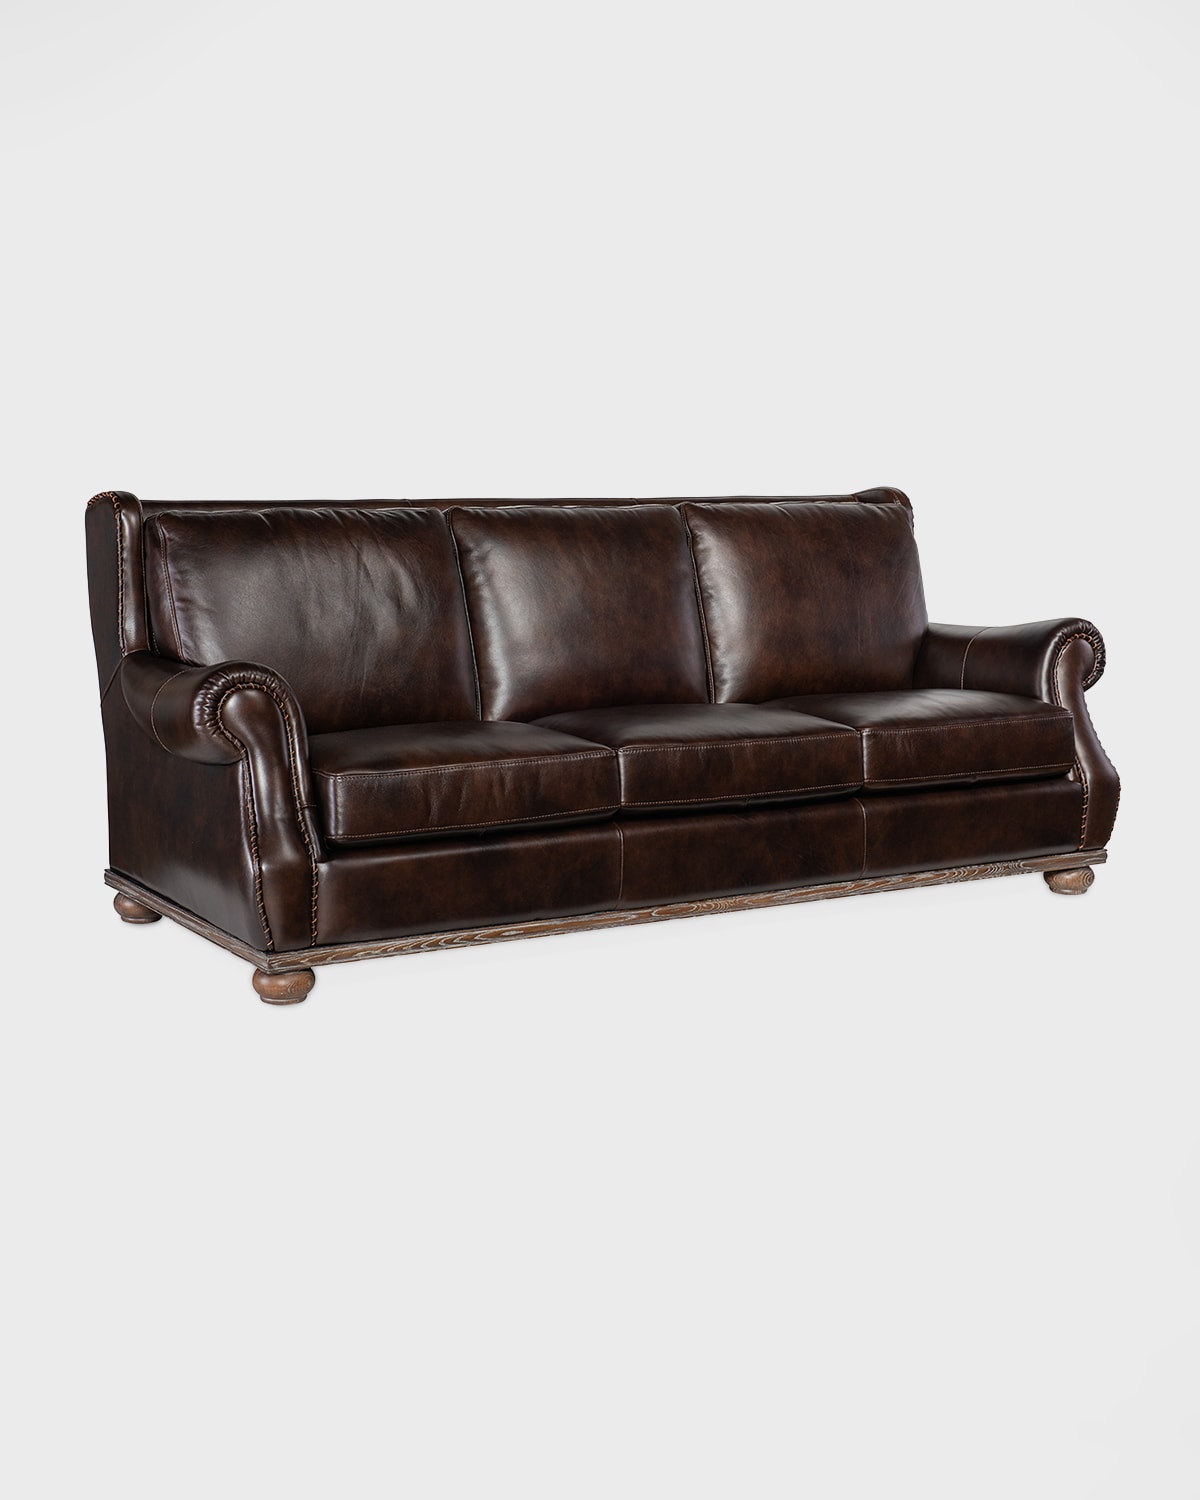 William Leather Sofa - 97"